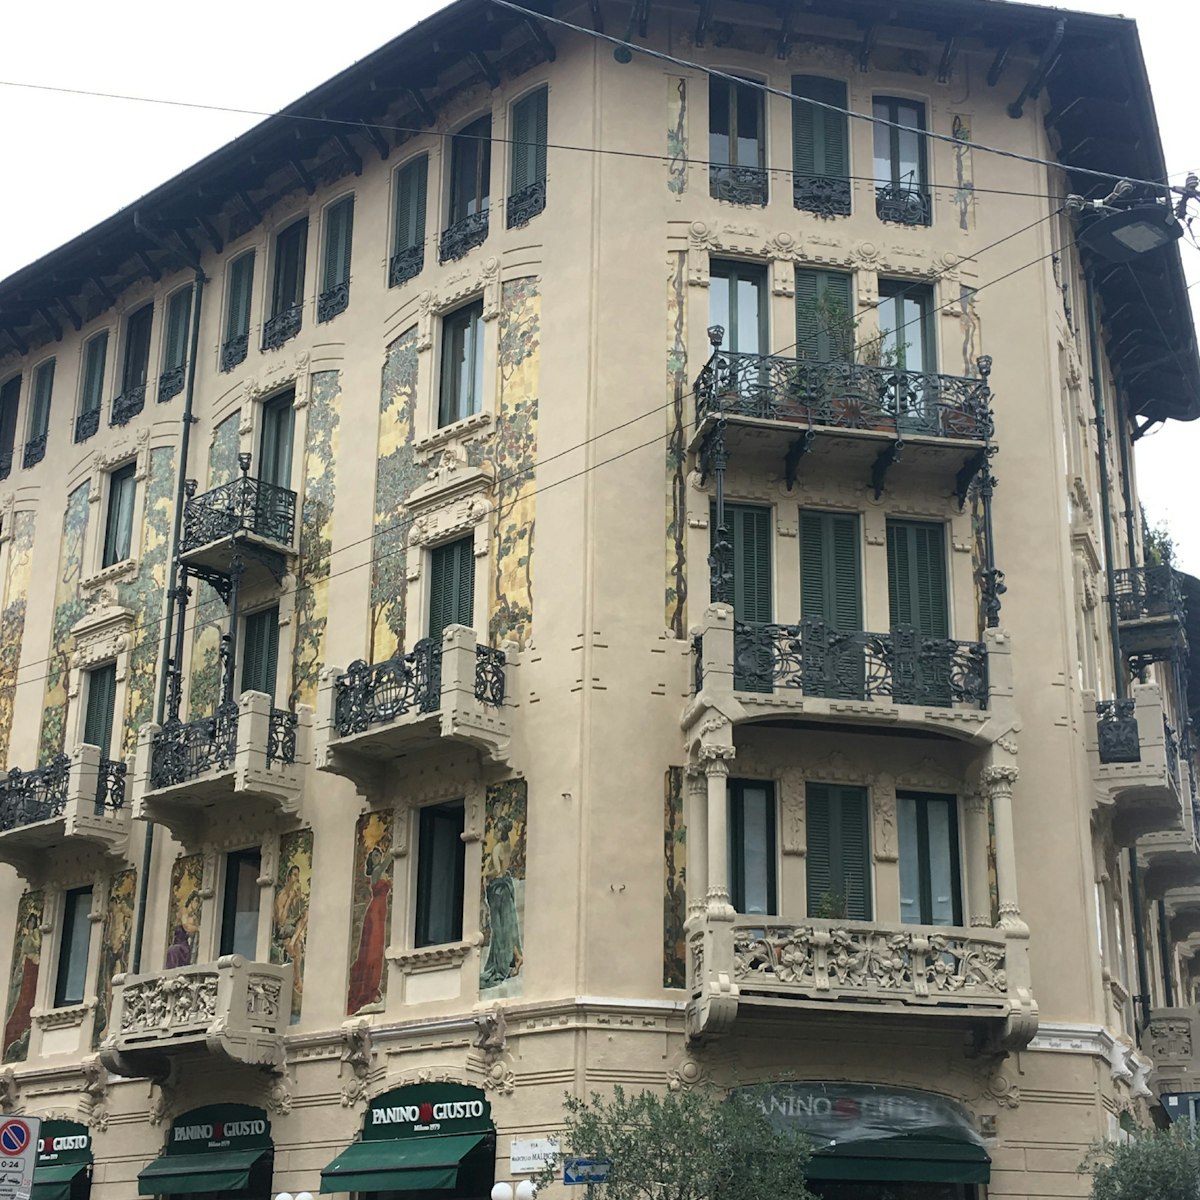 The exterior of Casa Galimberti